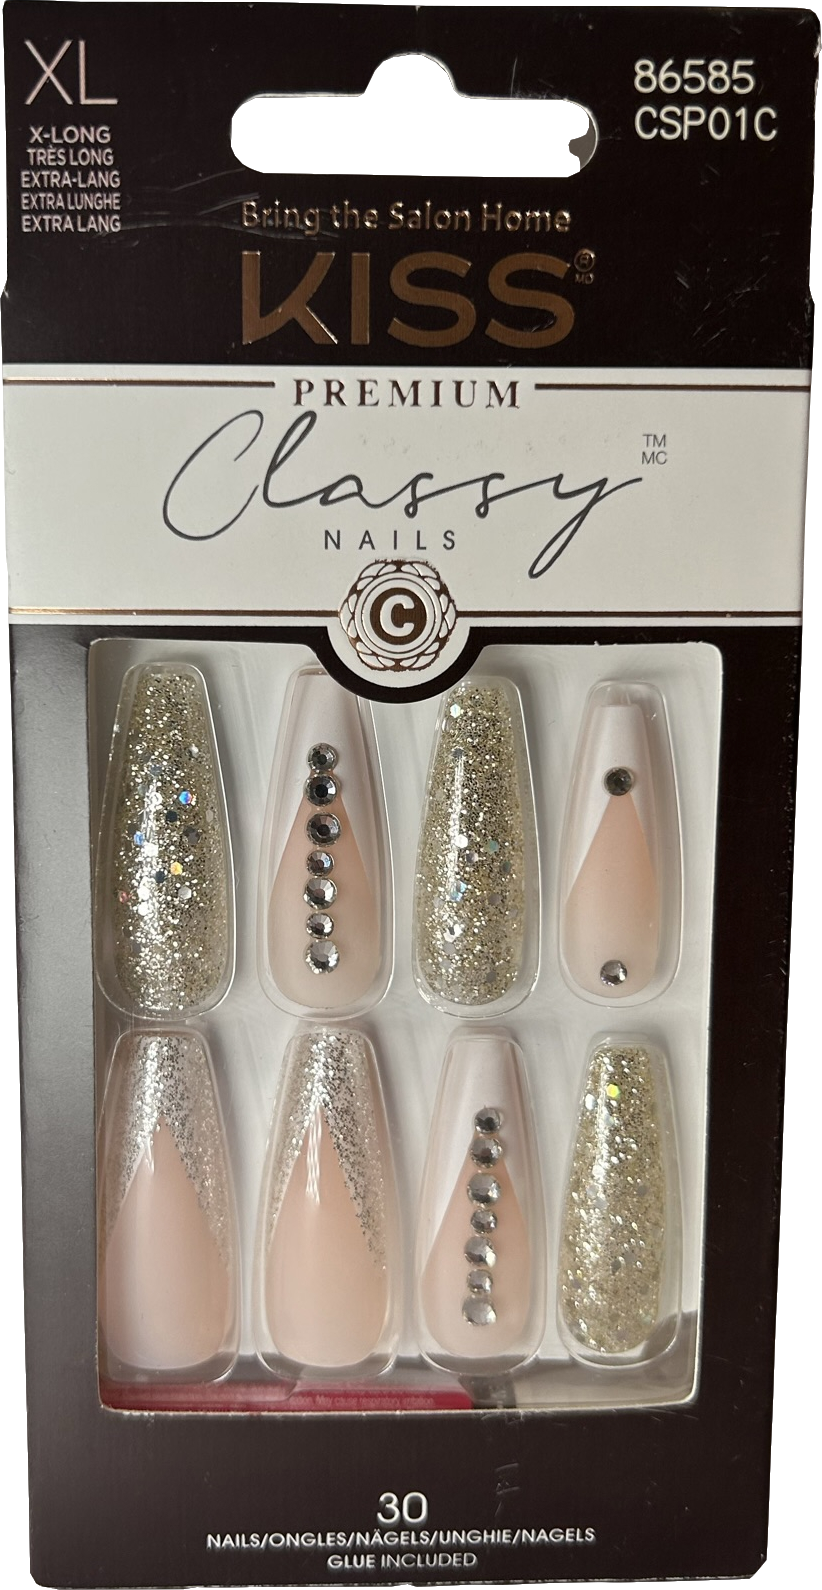 kiss Classy Premium Nails Csp01c 30 nails